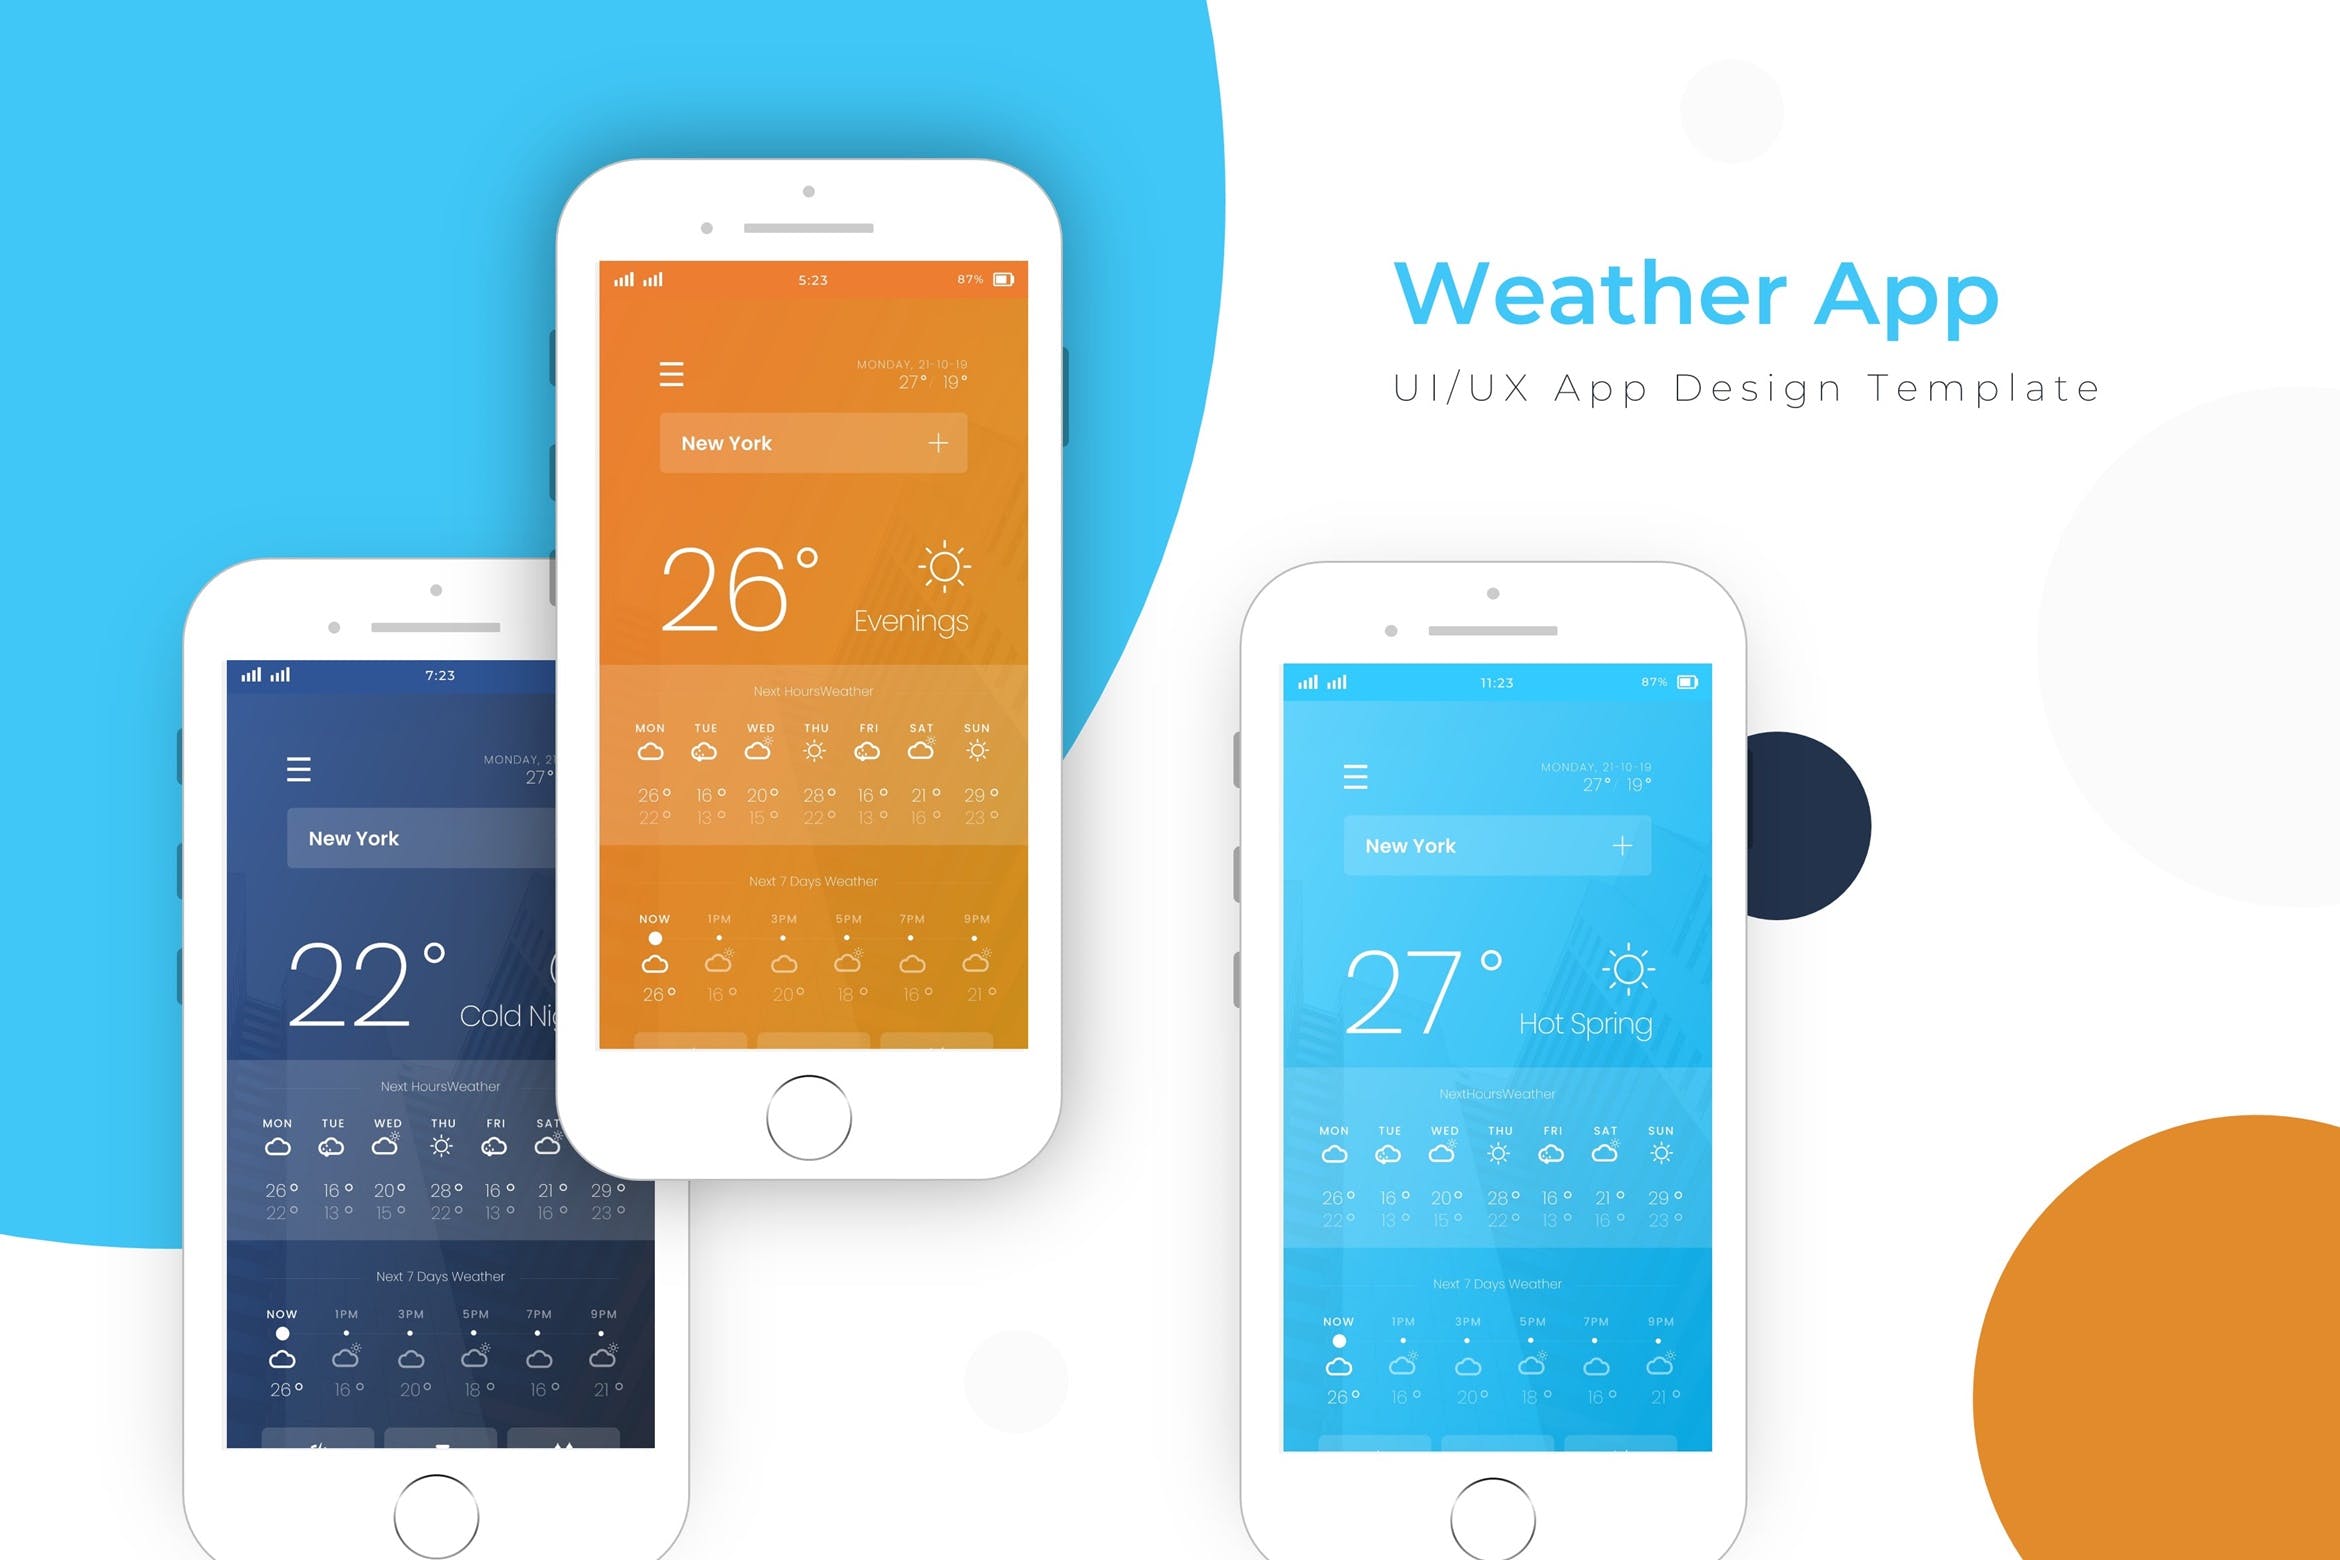 天气预报APP应用界面设计第一素材精选模板 Weather Template | App  Template插图